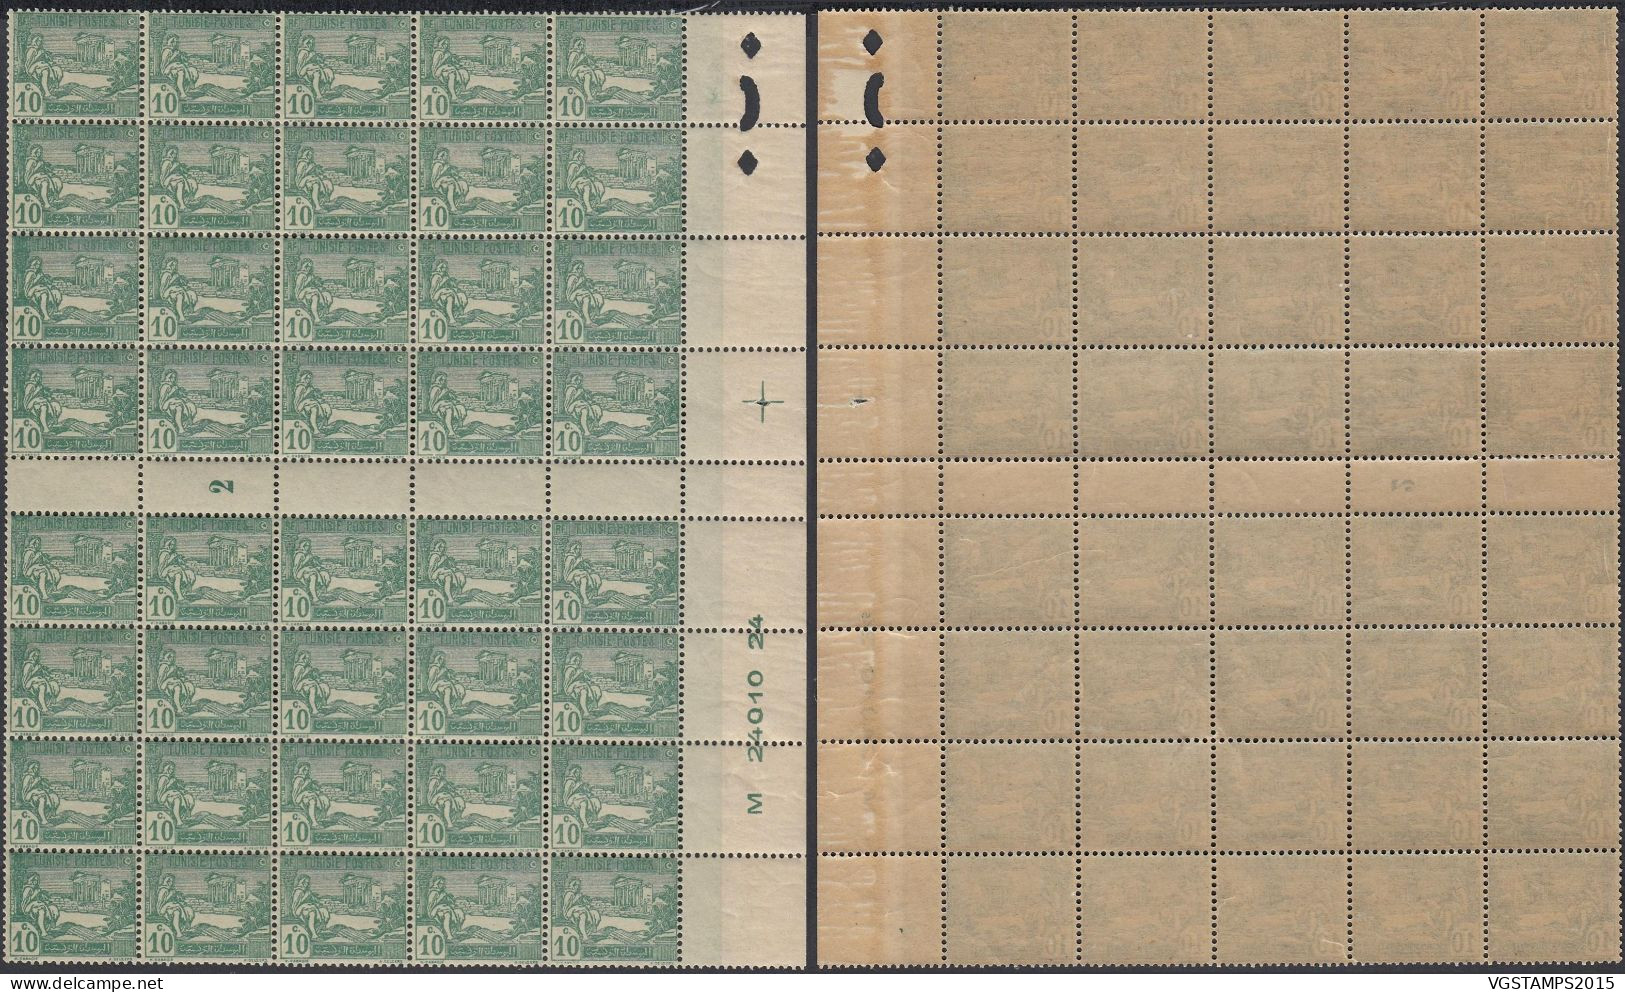 Tunisie 1922 - Colonie Française - Timbres Neufs. Yvert Nr.: 76 Avec Millesime"2". Bloc De 30 .... (EB) DC-12491 - Unused Stamps